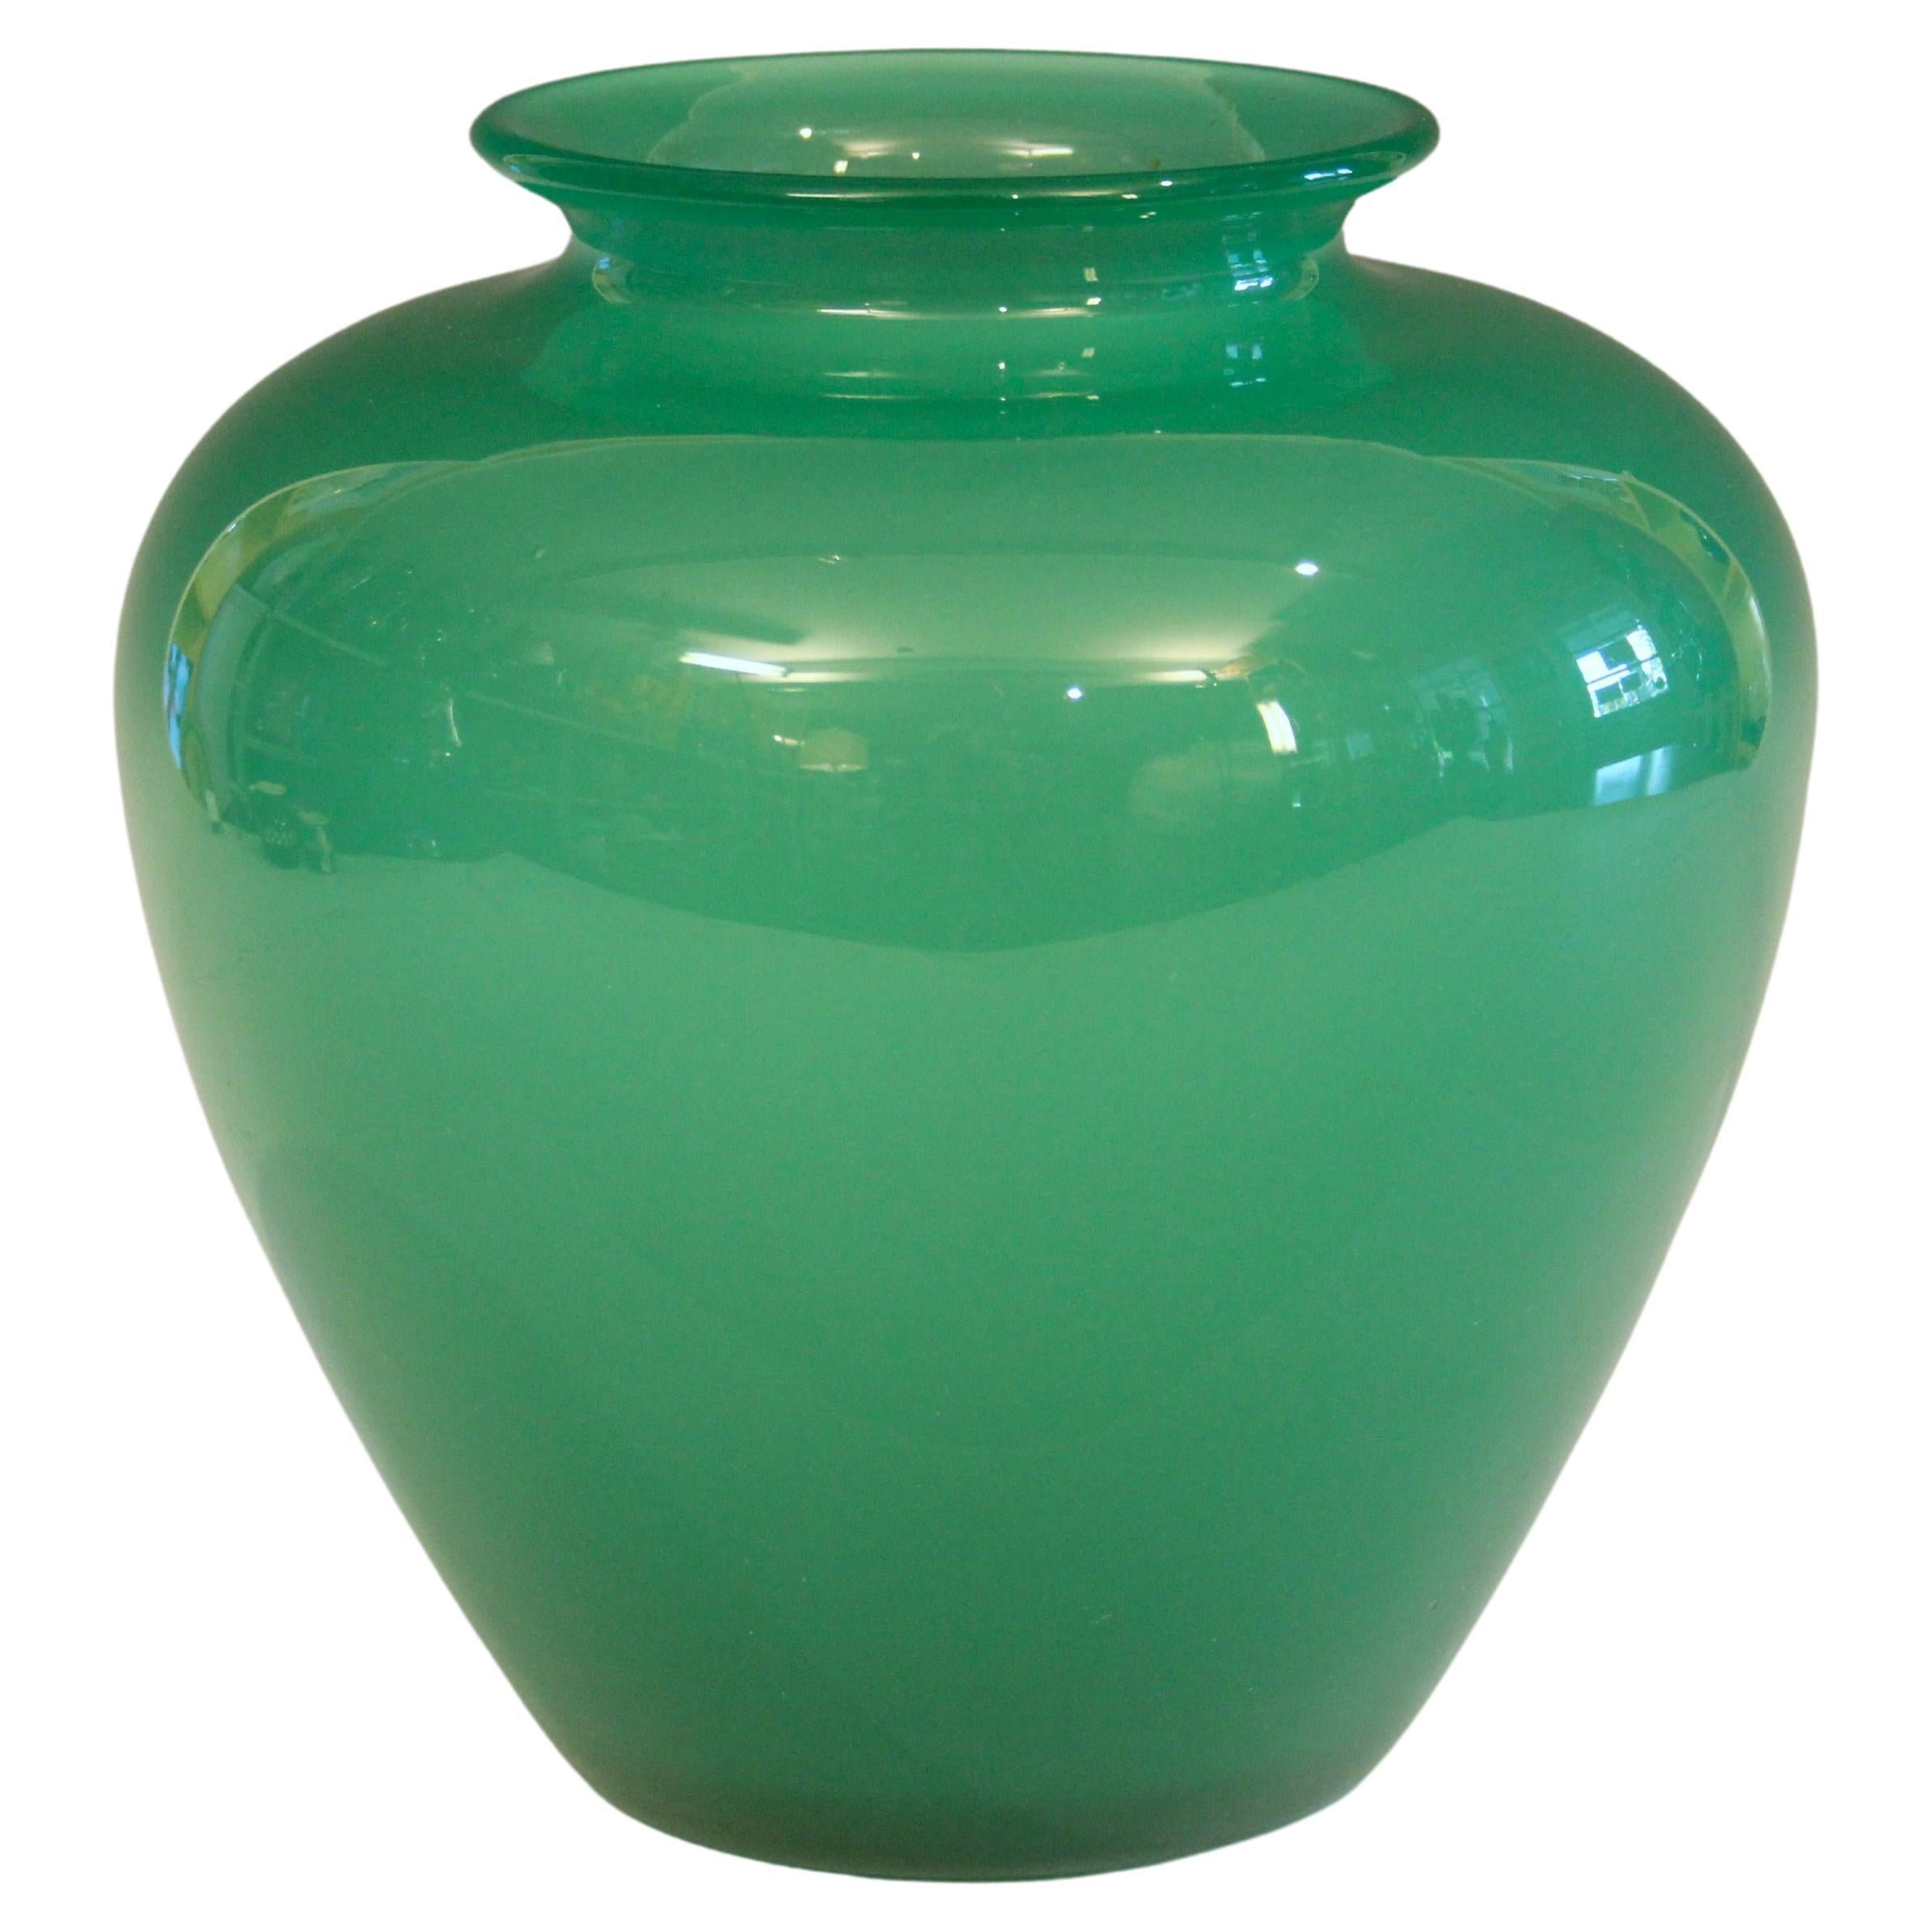 Antique Steuben Glass Vase Carder Apple Jade Green Art Deco Signed 8"